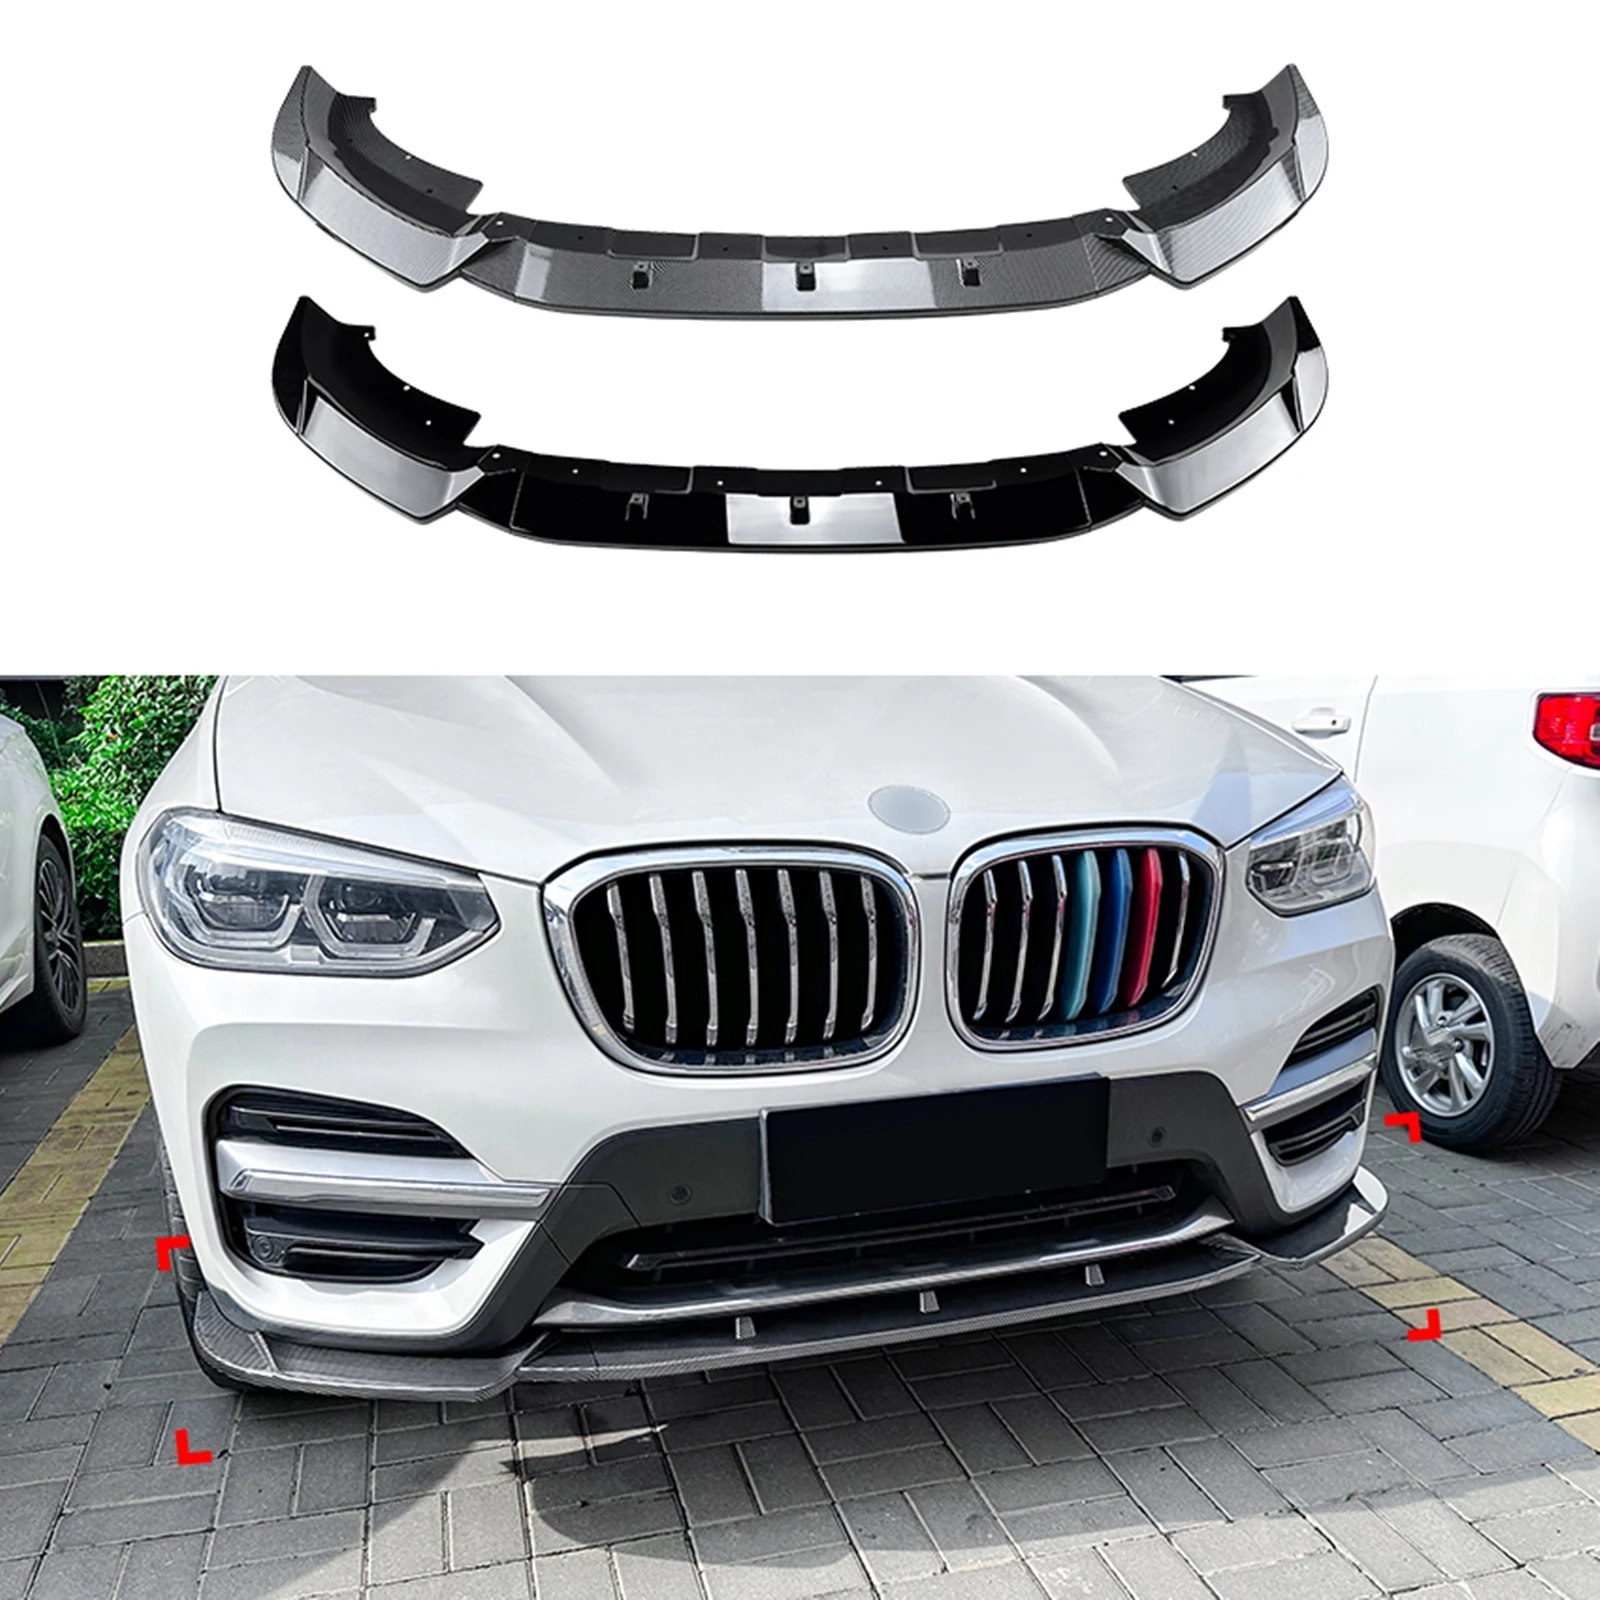 

Спойлер для переднего бампера, губа для BMW X3 G01 X4 G02 06,2018-2021, обычная версия, глянцевый черный/углеродное волокно, вид, нижний сплиттер, лезвие